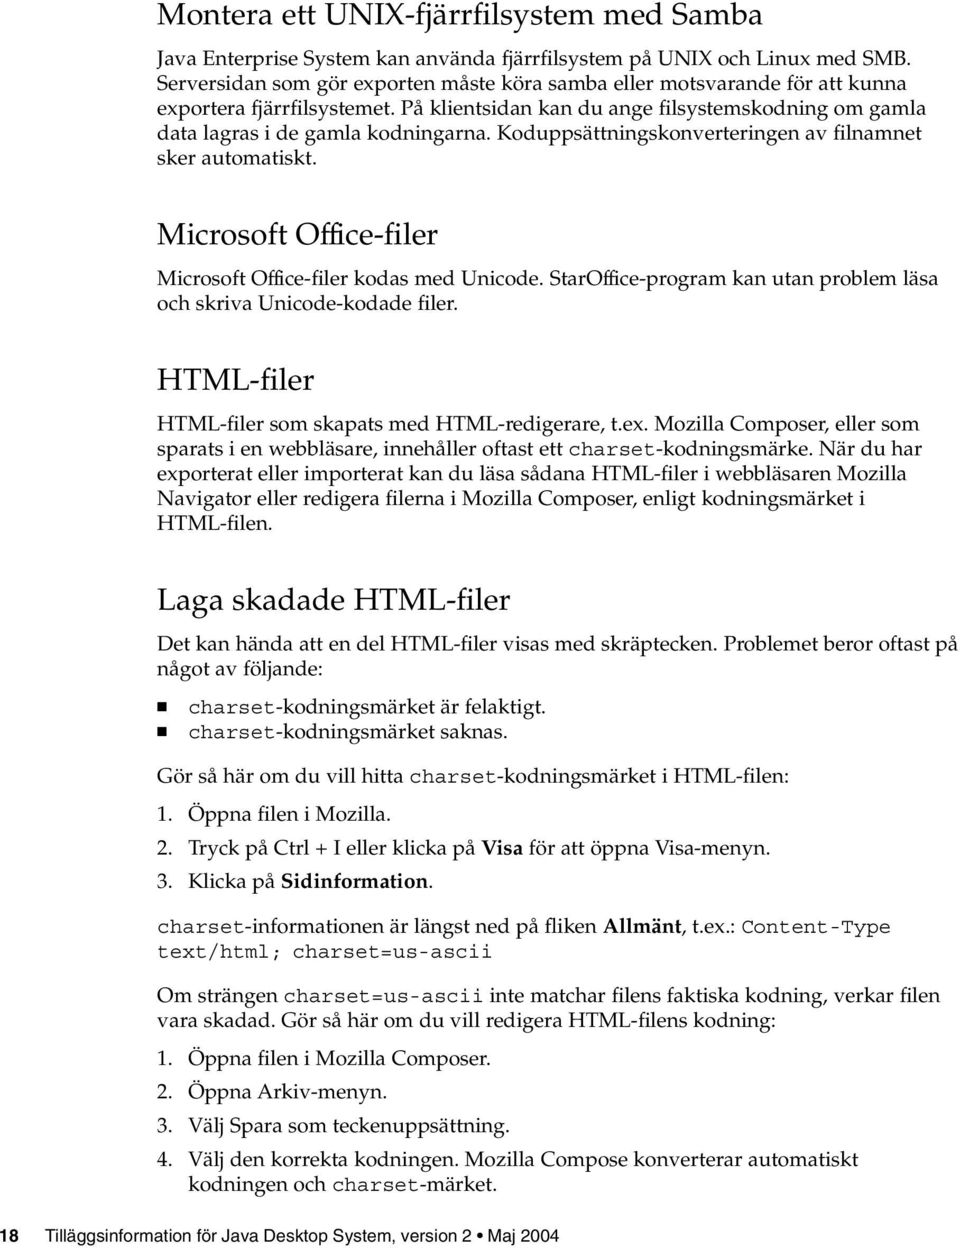 Koduppsättningskonverteringen av filnamnet sker automatiskt. Microsoft Office-filer Microsoft Office-filer kodas med Unicode. StarOffice-program kan utan problem läsa och skriva Unicode-kodade filer.